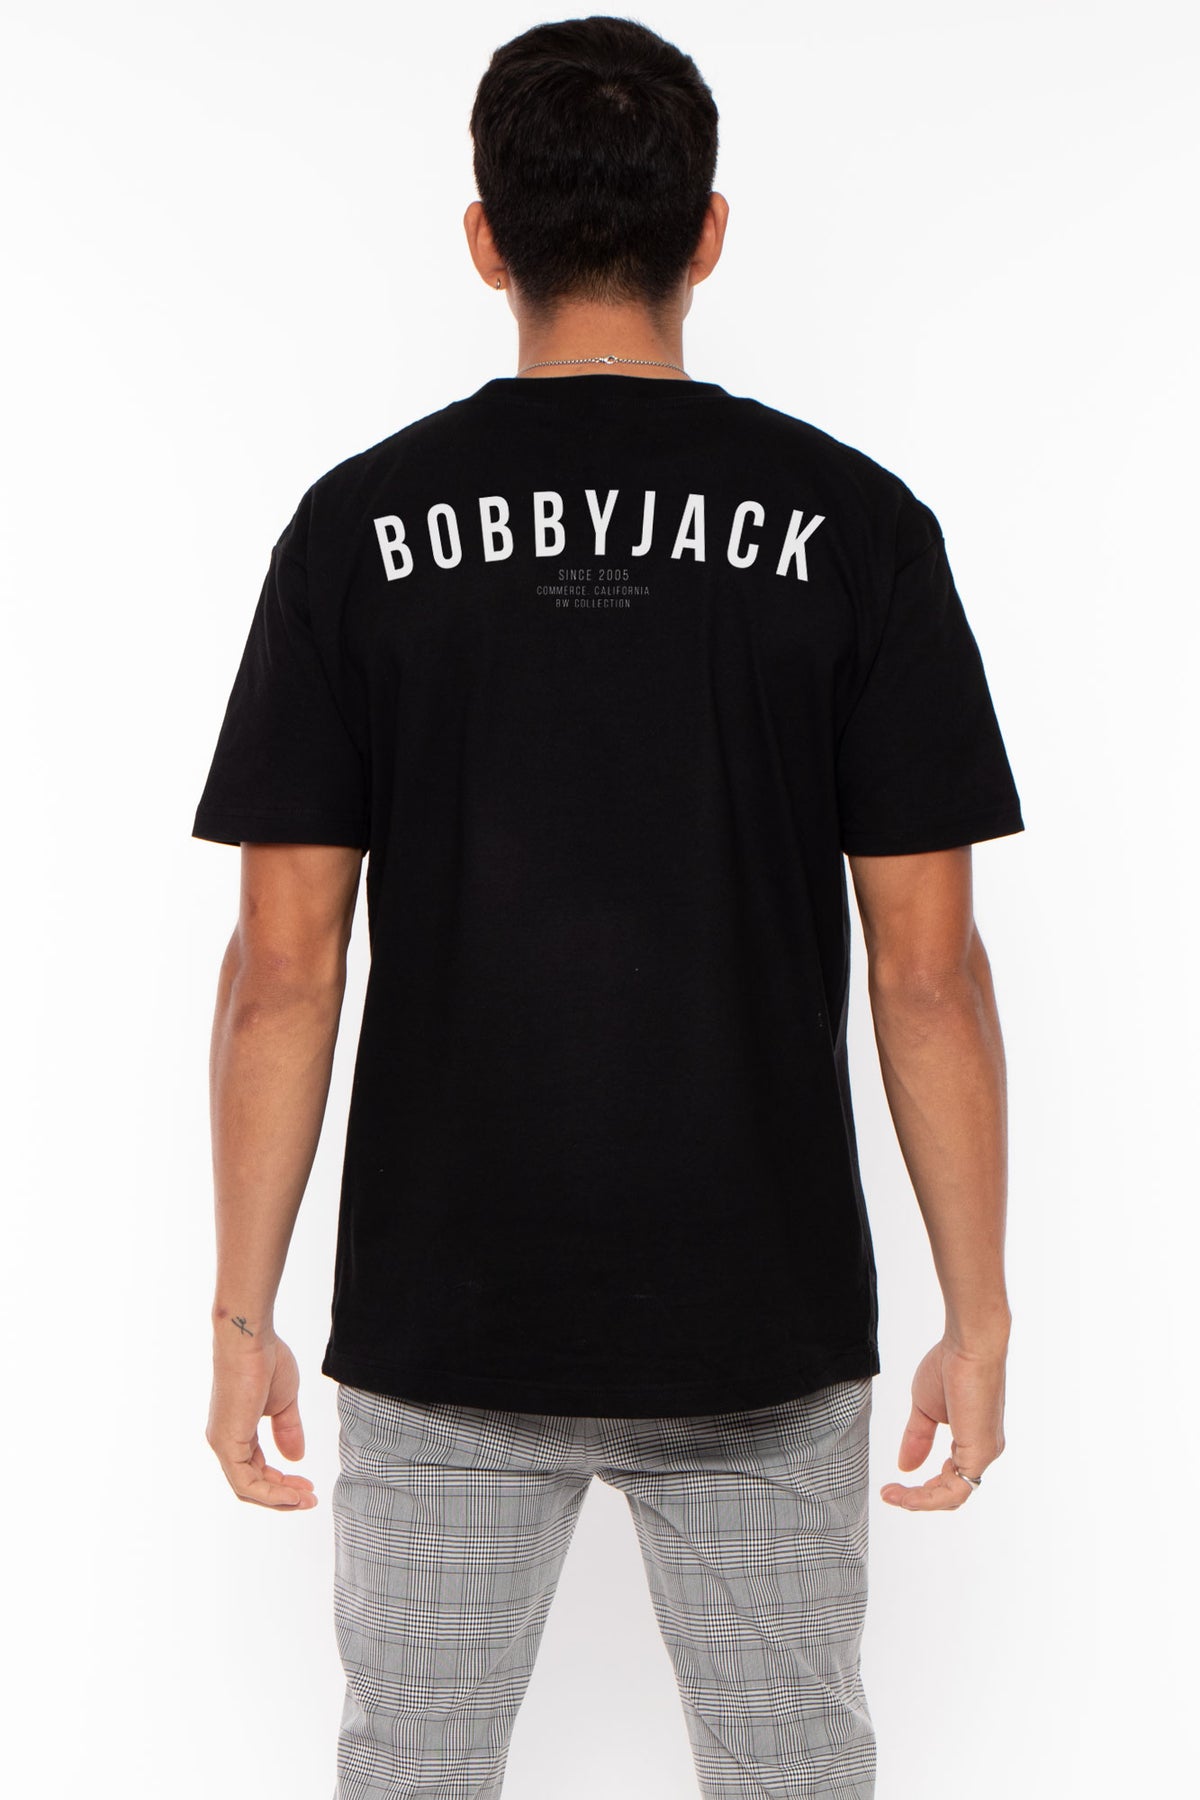 Not Listening  - Bobby Jack Men HW Shirt - Black